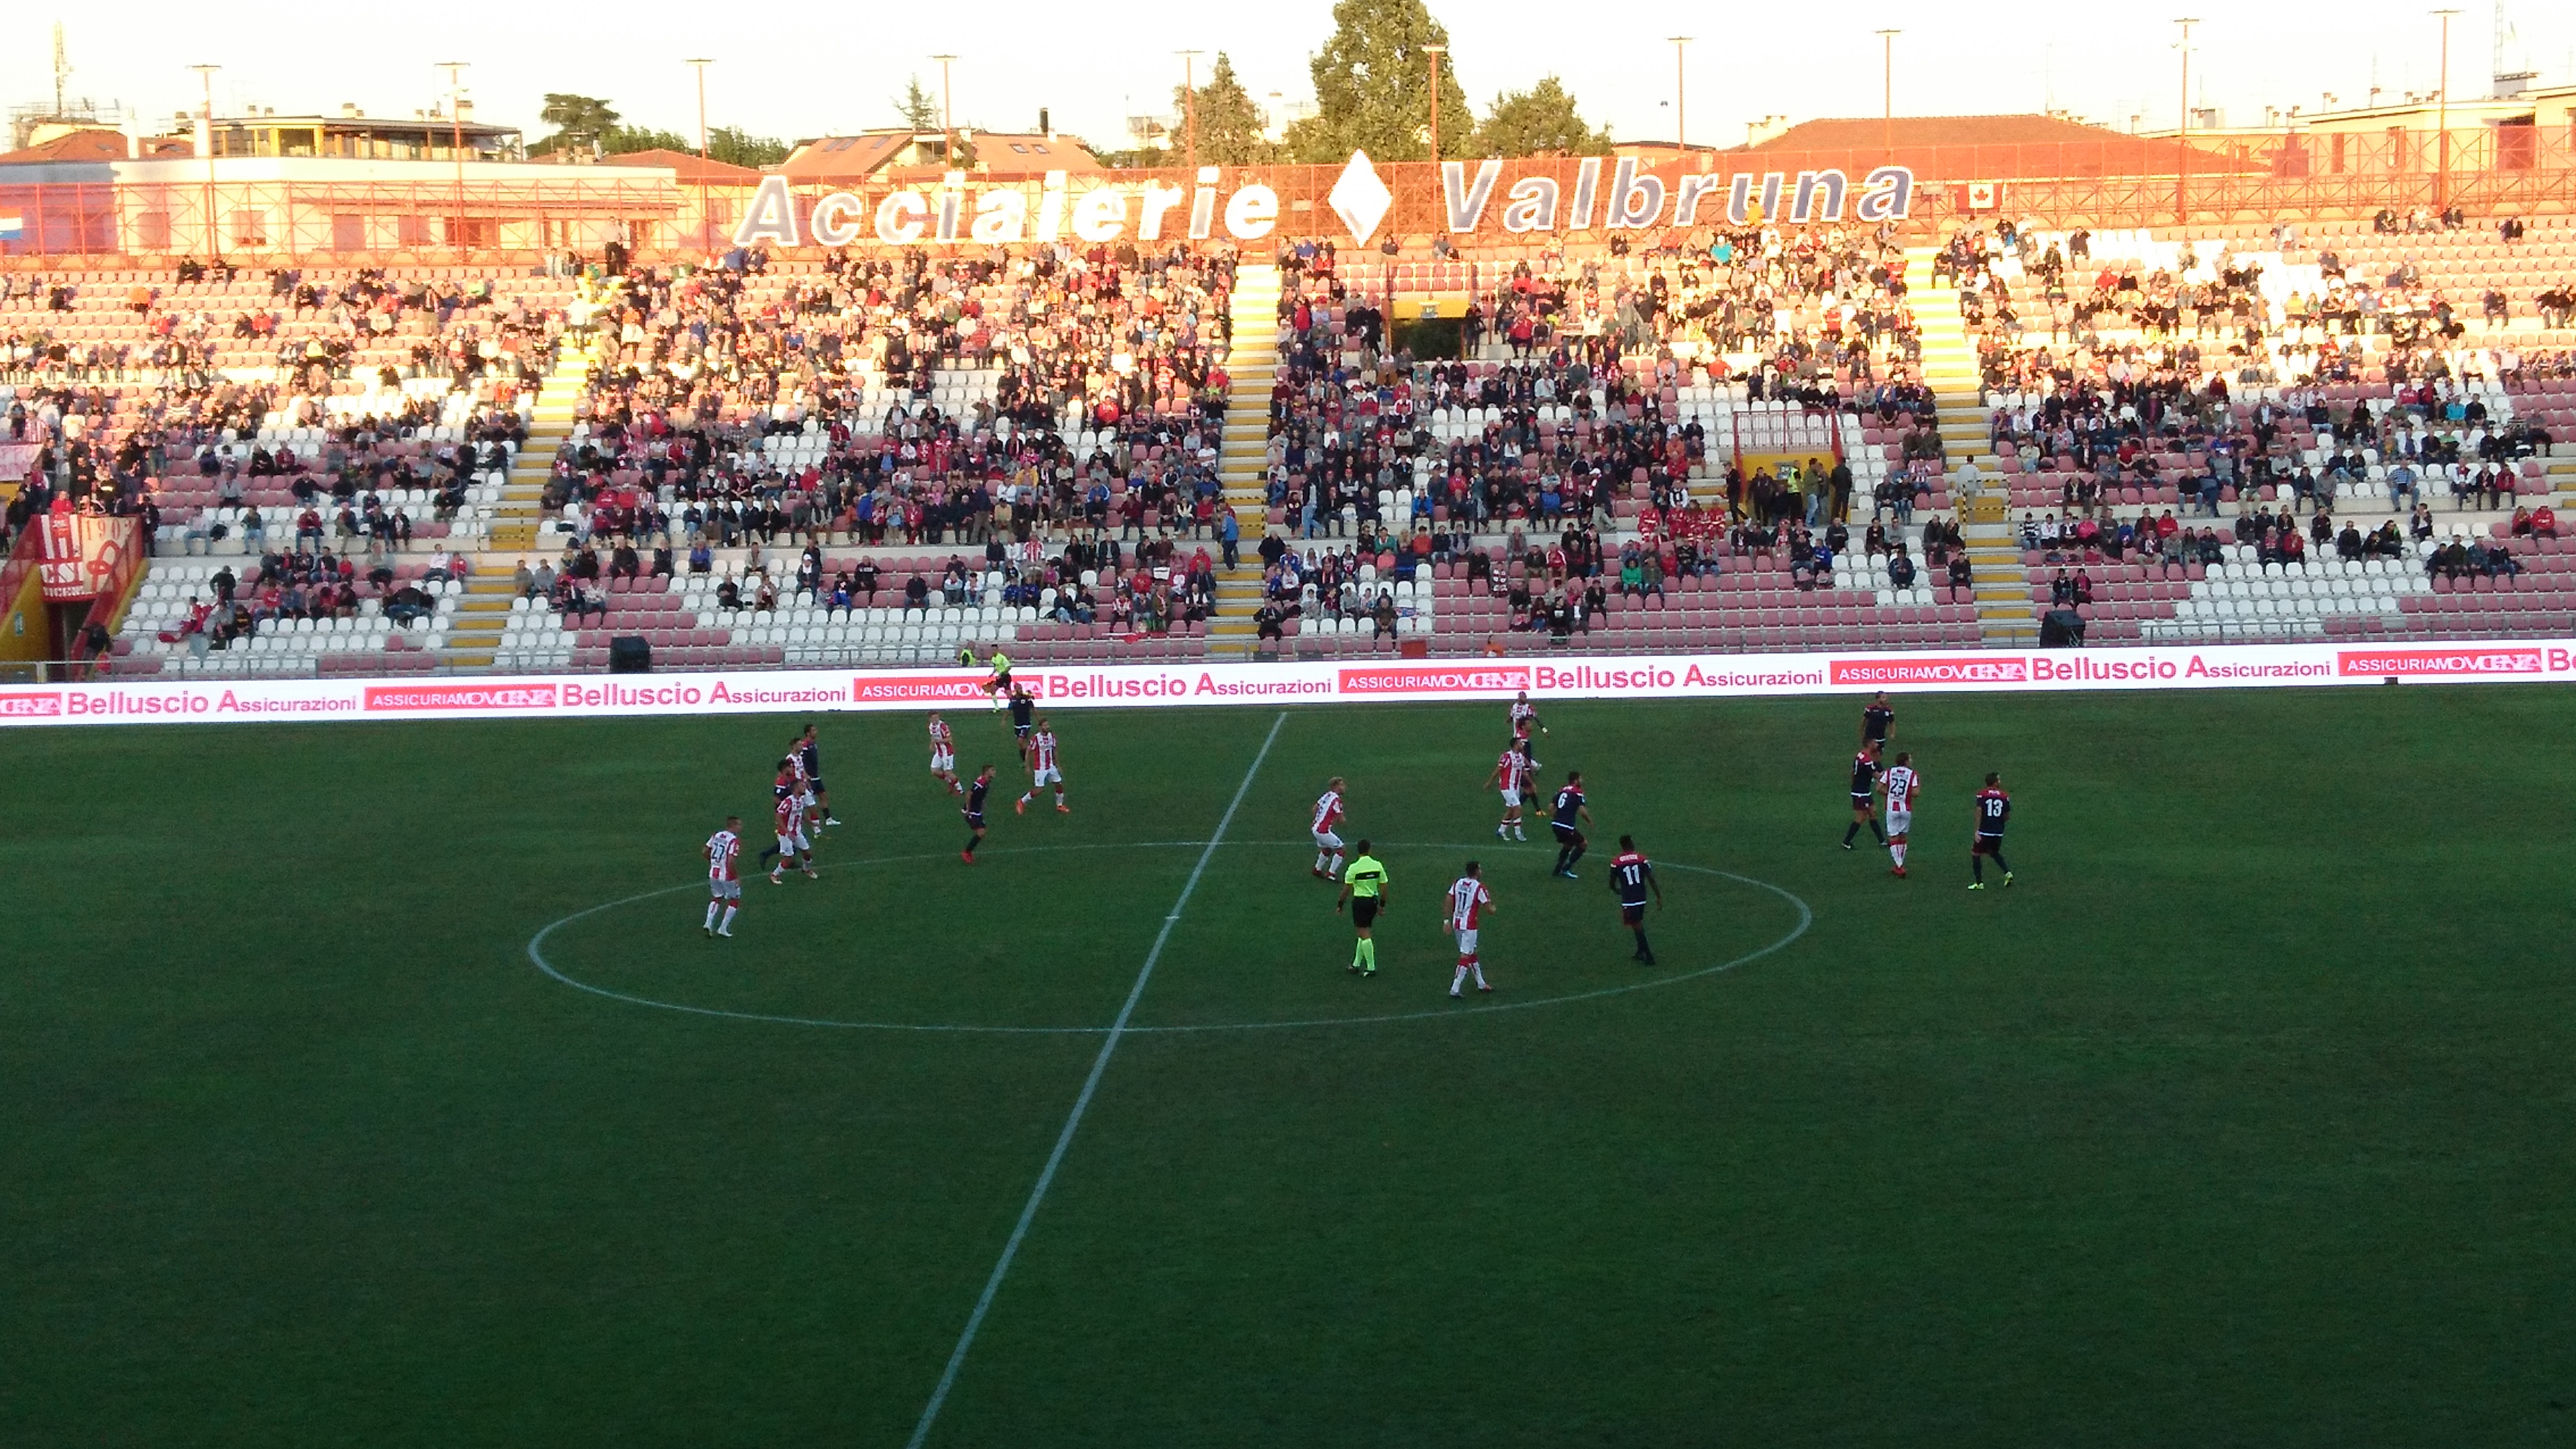 L.R. Vicenza-Rimini: 1-1 (3^ giornata)